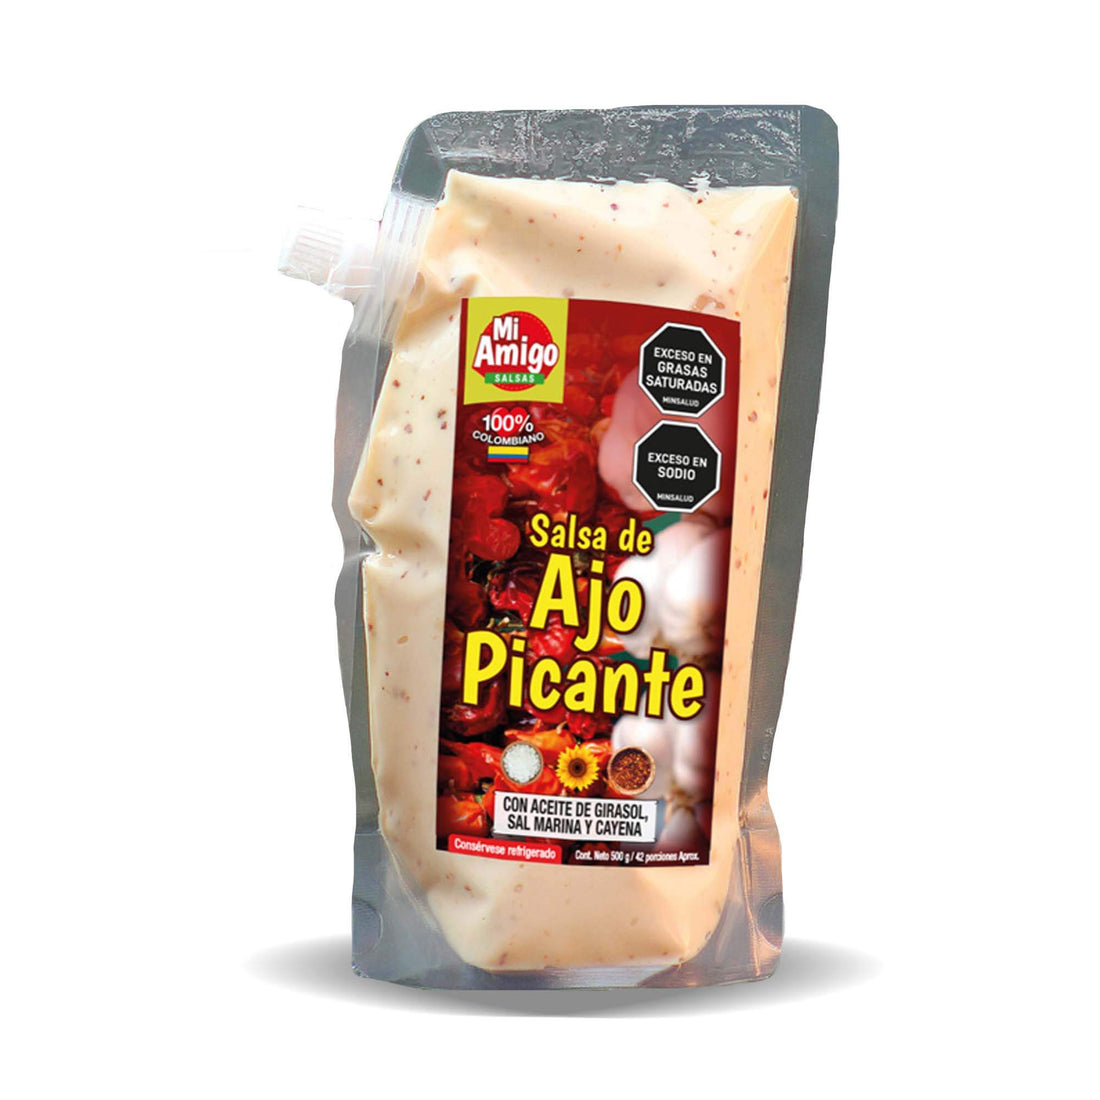 Salsa de Ajo Picante x 240gr: Fotografía de salsa de ajo picante en envase de 240 gramos.